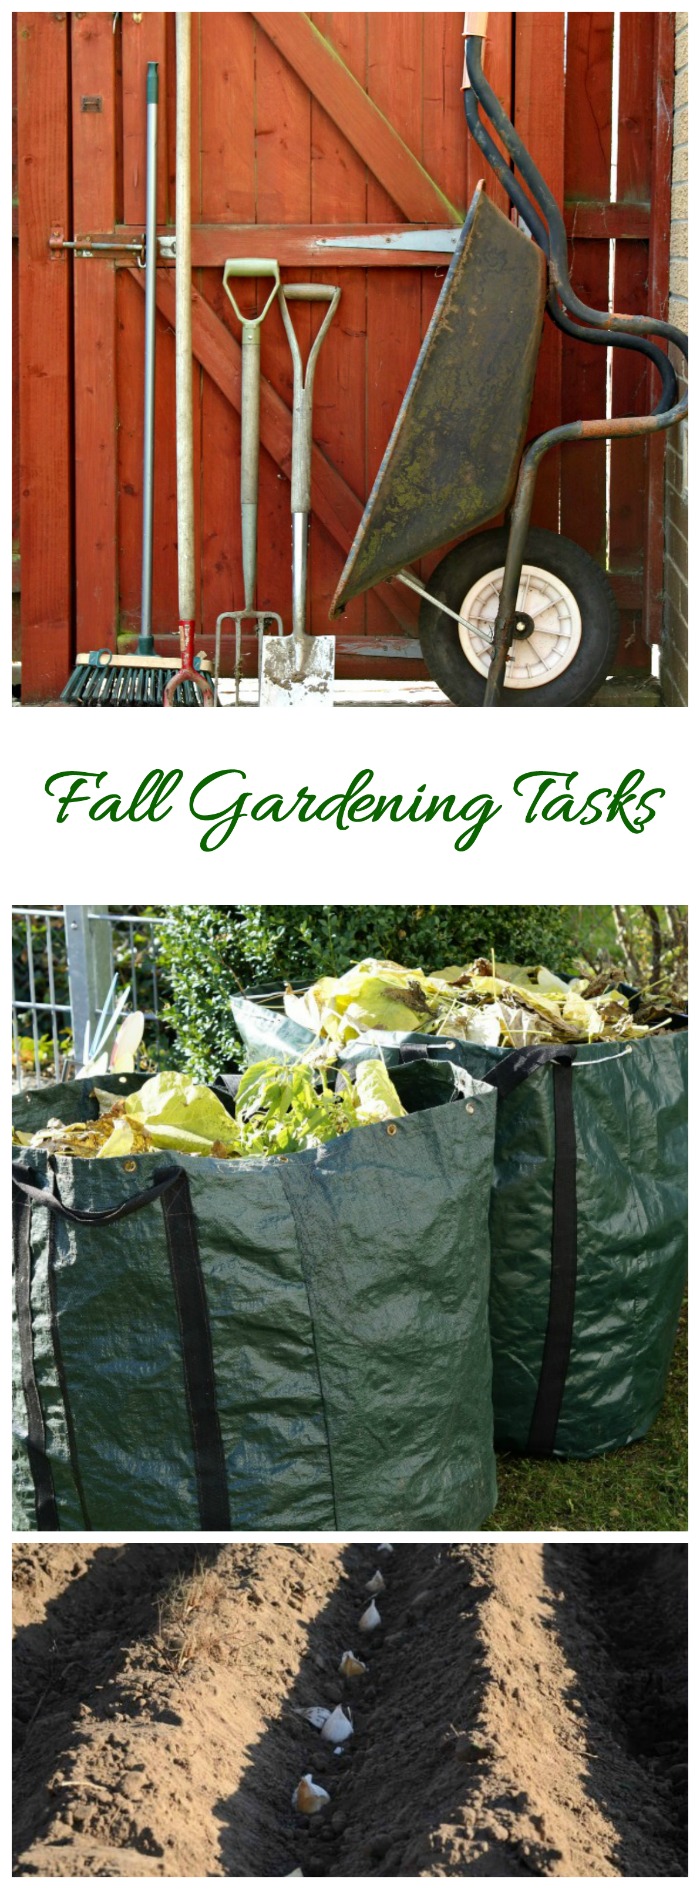 Őszi kertészeti ellenőrzőlista - Tippek az őszi kertkarbantartáshoz